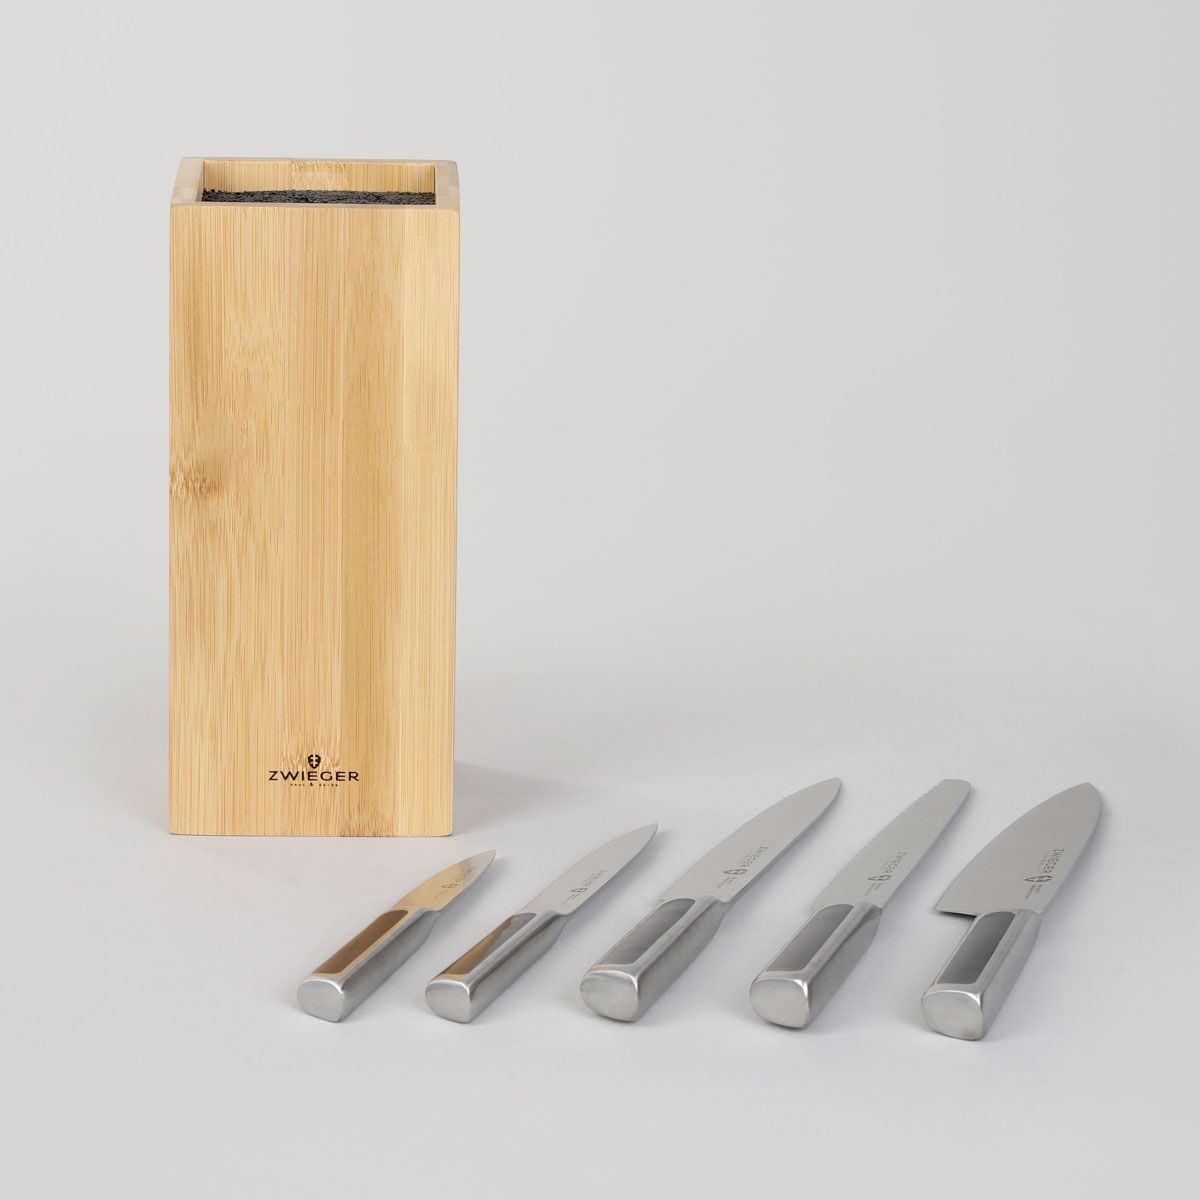 Personalizowany komplet noży z blokiem bambusowym 6 el. PREZENT DLA RODZICÓW